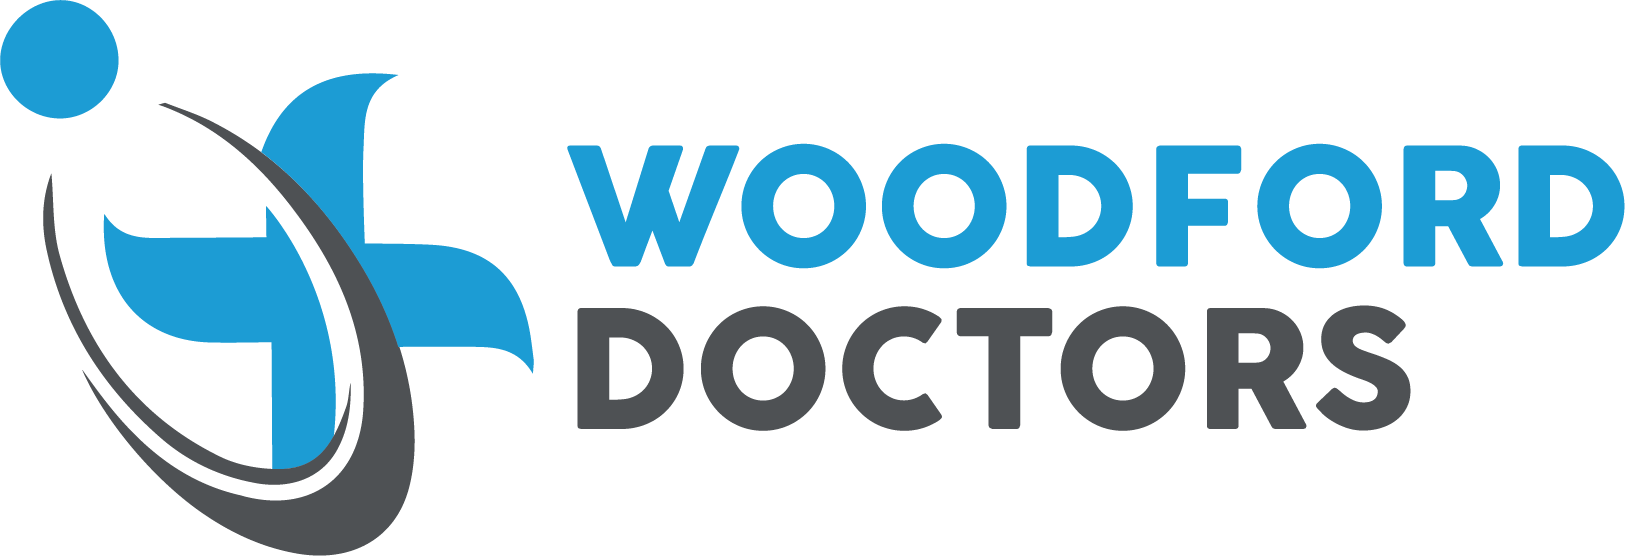 Woodford Doctors